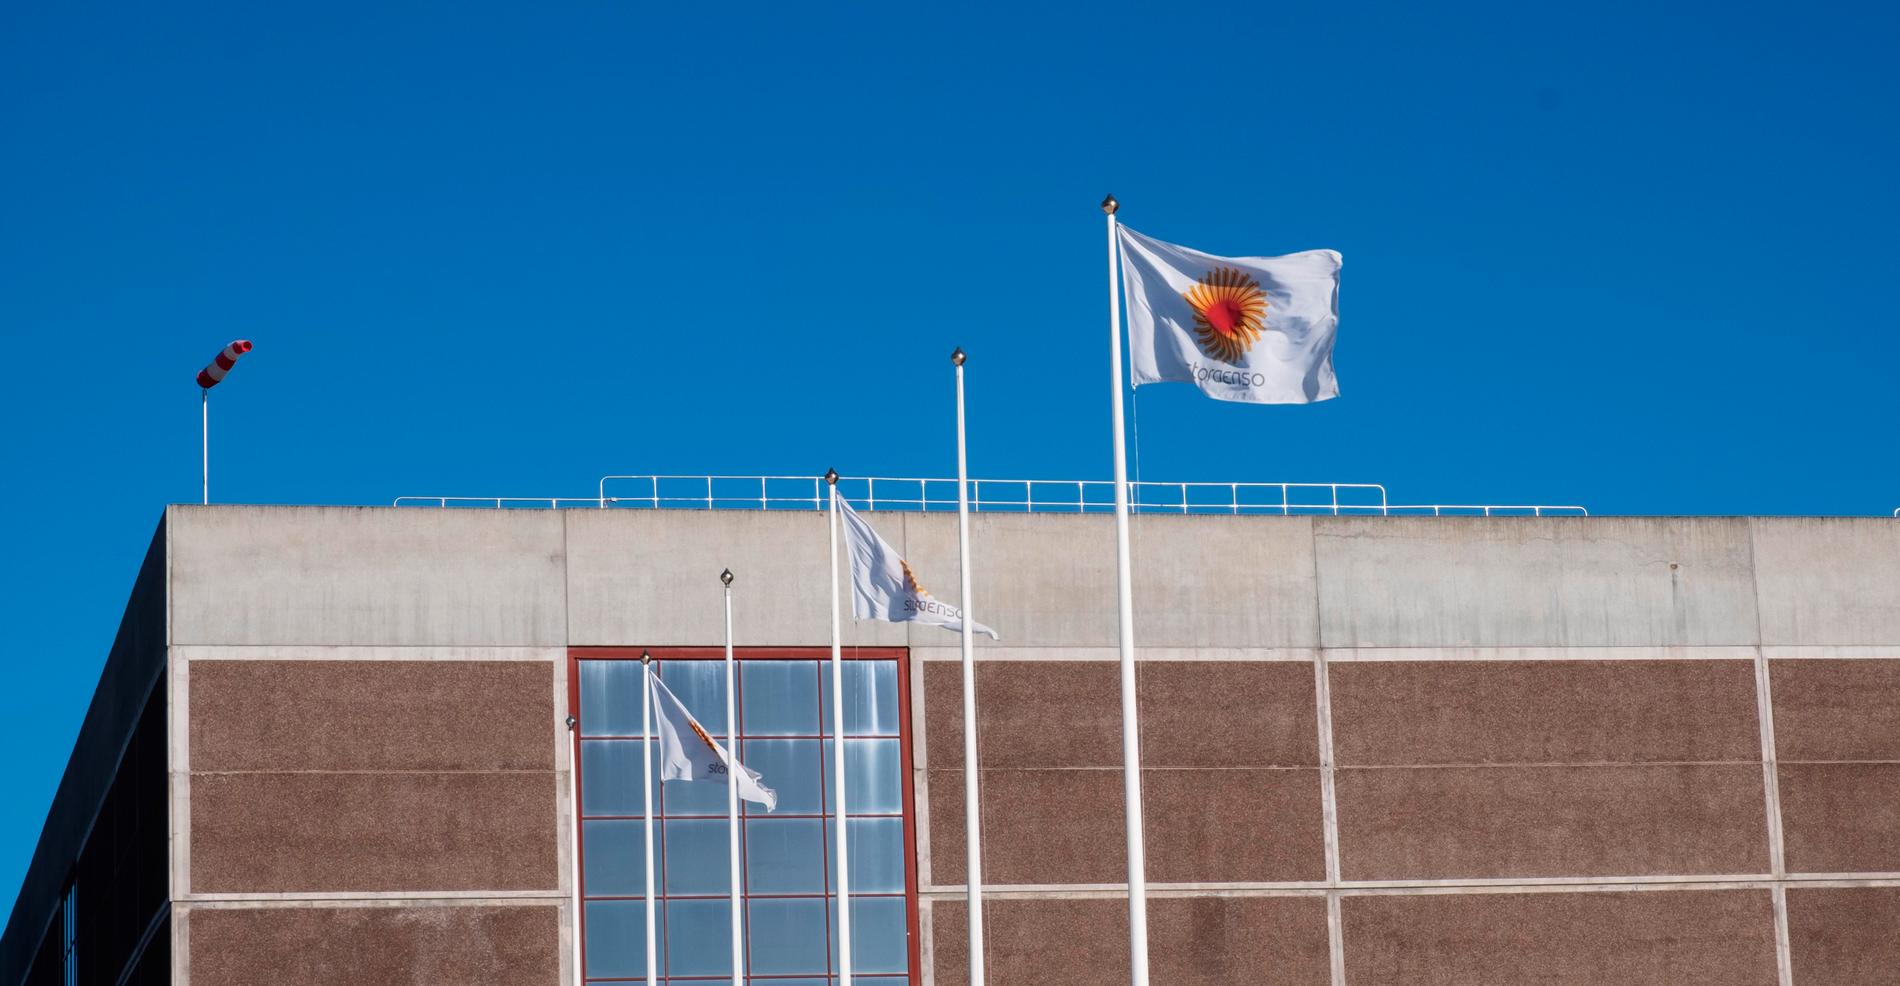 Stora Enzos flaggor vajar fortfarande över det tysta bruket i Kvarnsveden. Nu ska batteritillverkaren Northvolt ta över.